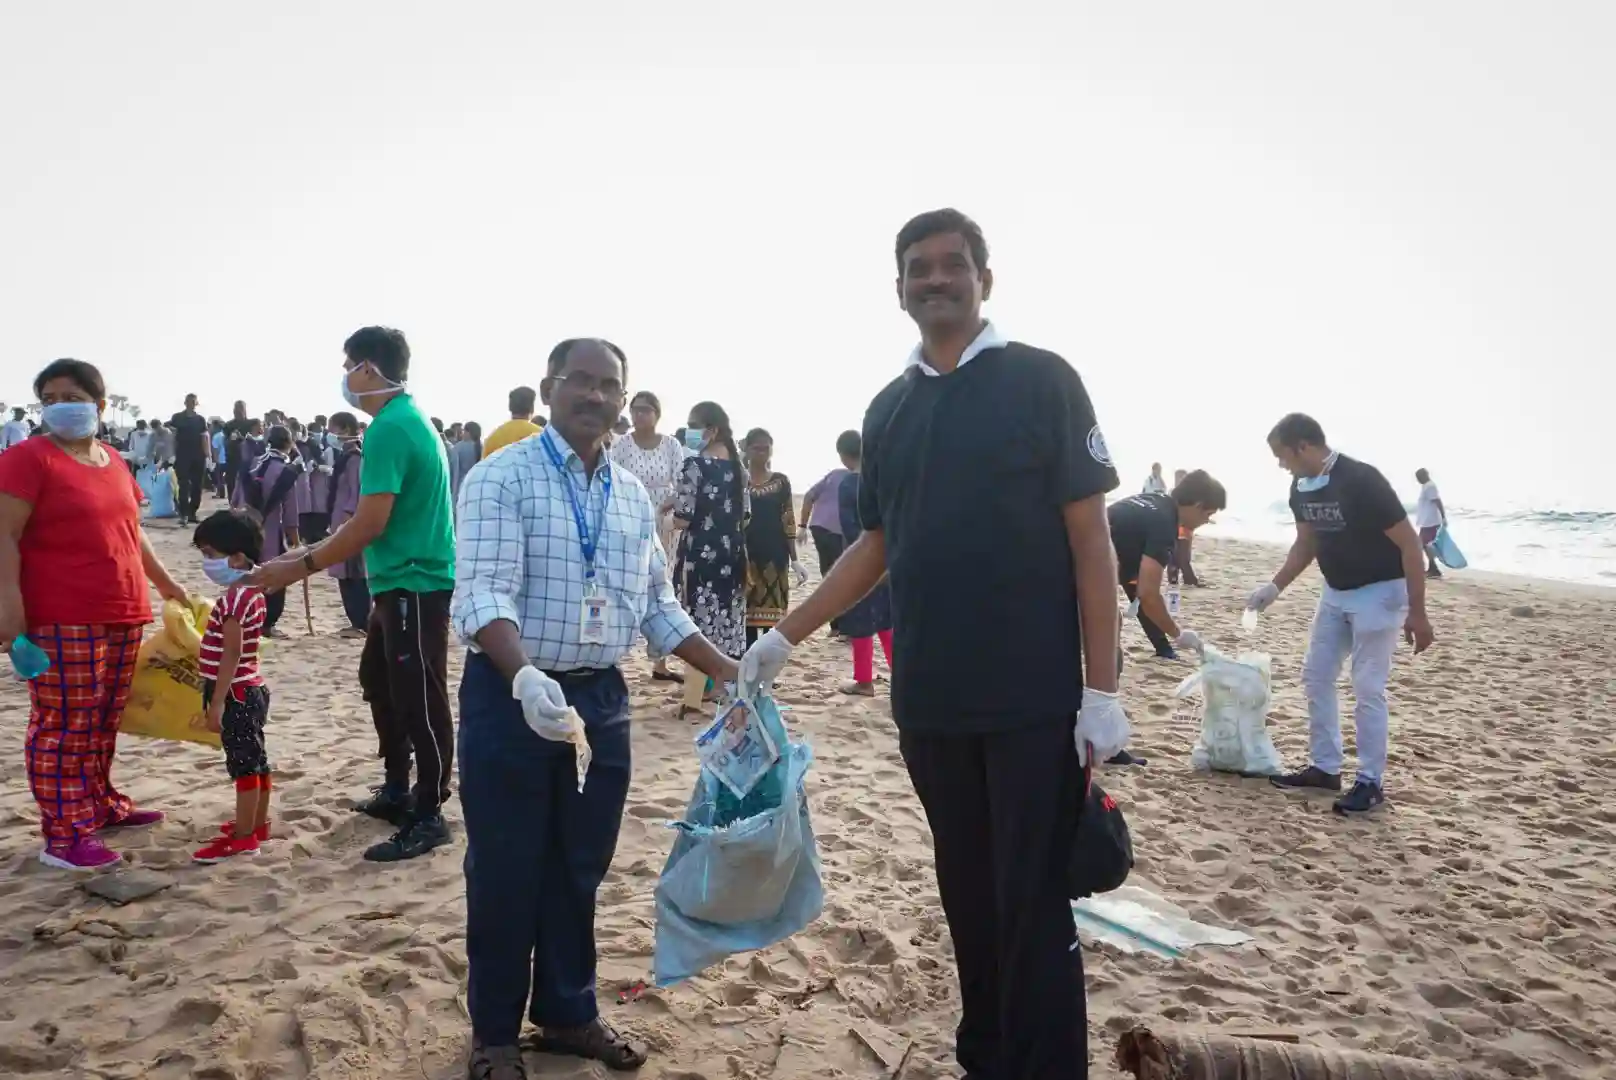 اثنان وعشرون ألف شخص يتجمعون في فيساخاباتنام لإجراء أكبر عملية لتنظيف الشواطئ في العالم